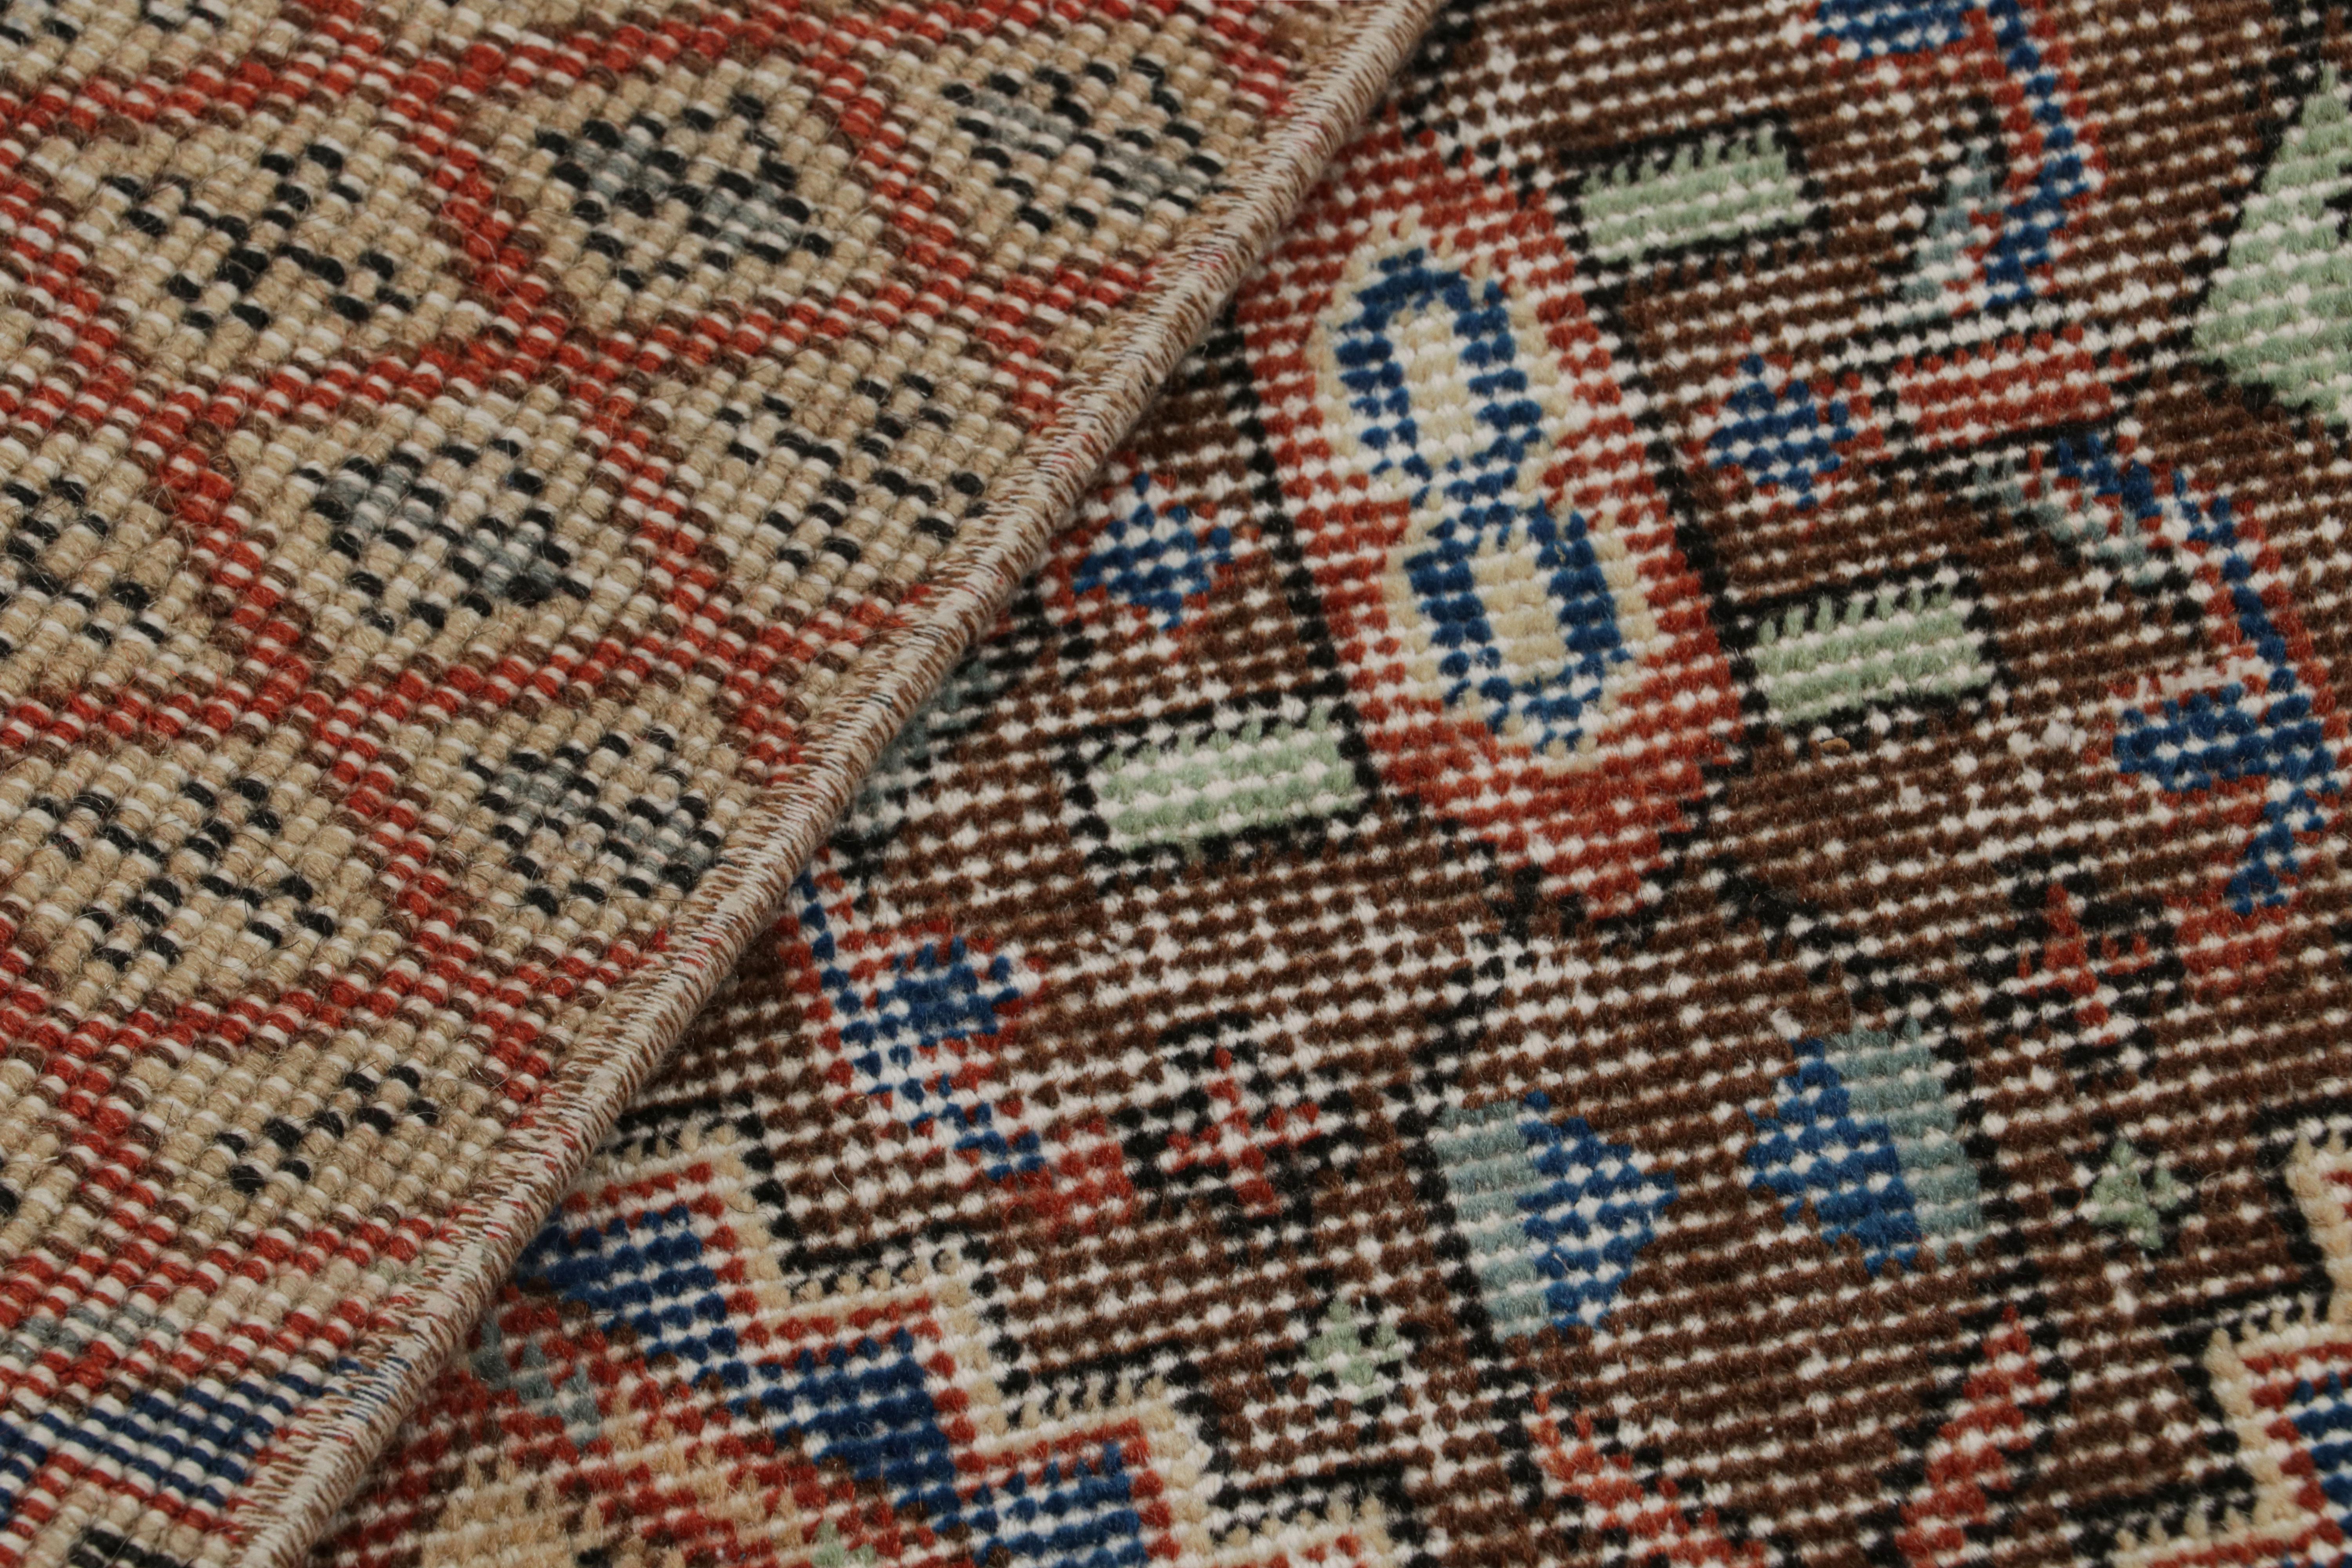 Wool Vintage Zeki Müren Rug in Brown, Red, Blue Geometric Patterns, from Rug & Kilim For Sale